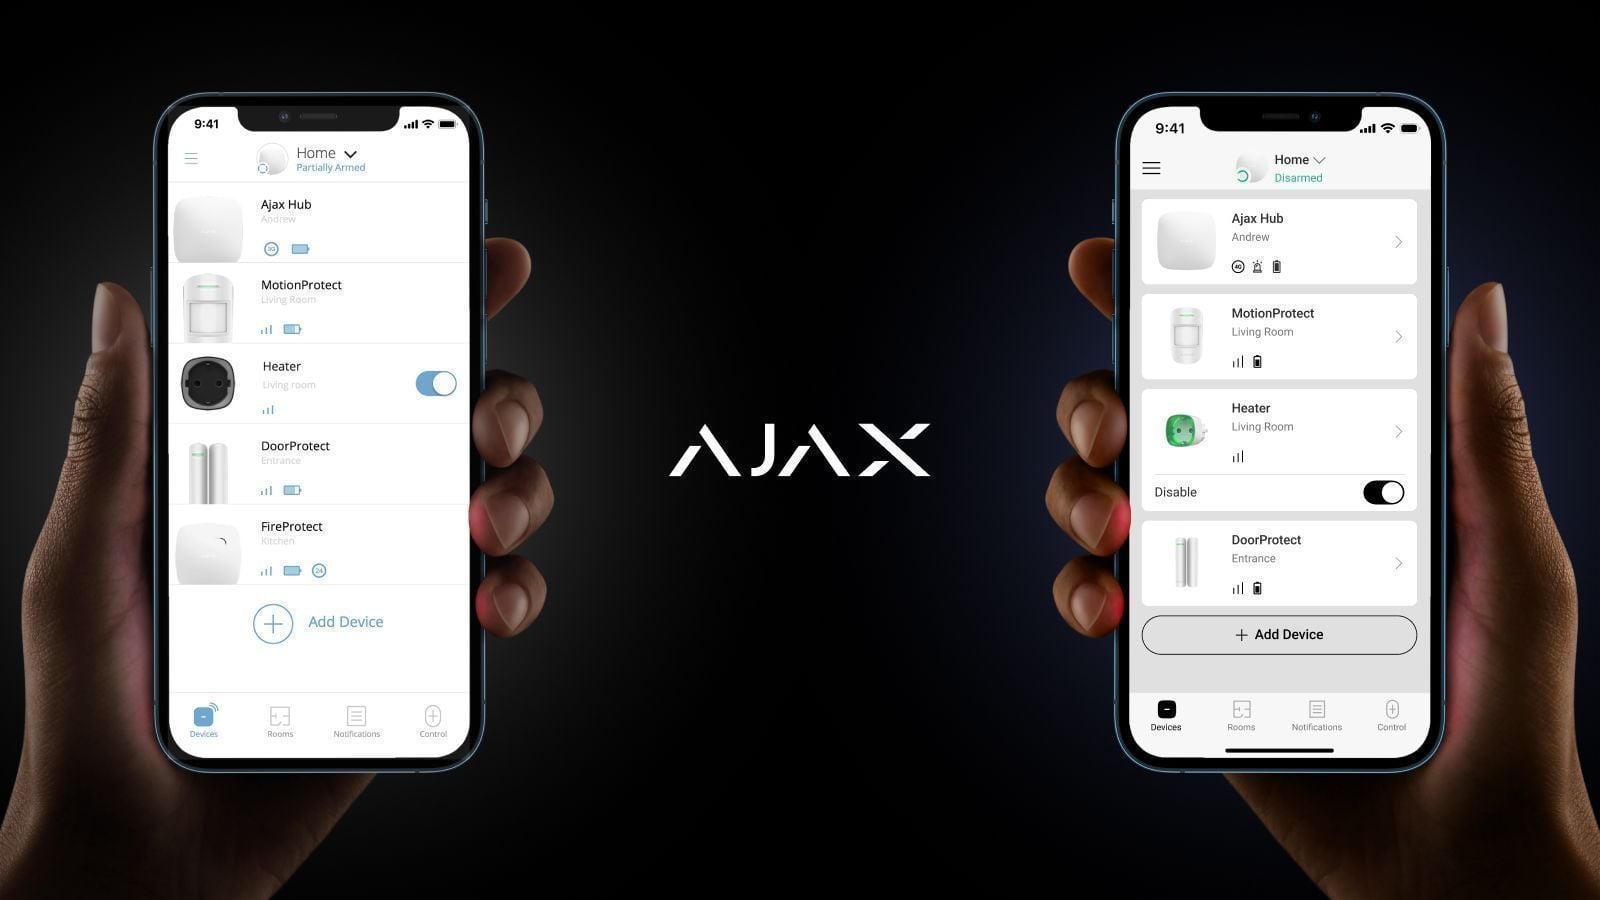 Оновлений дизайн застосунків Ajax — все для комфорту